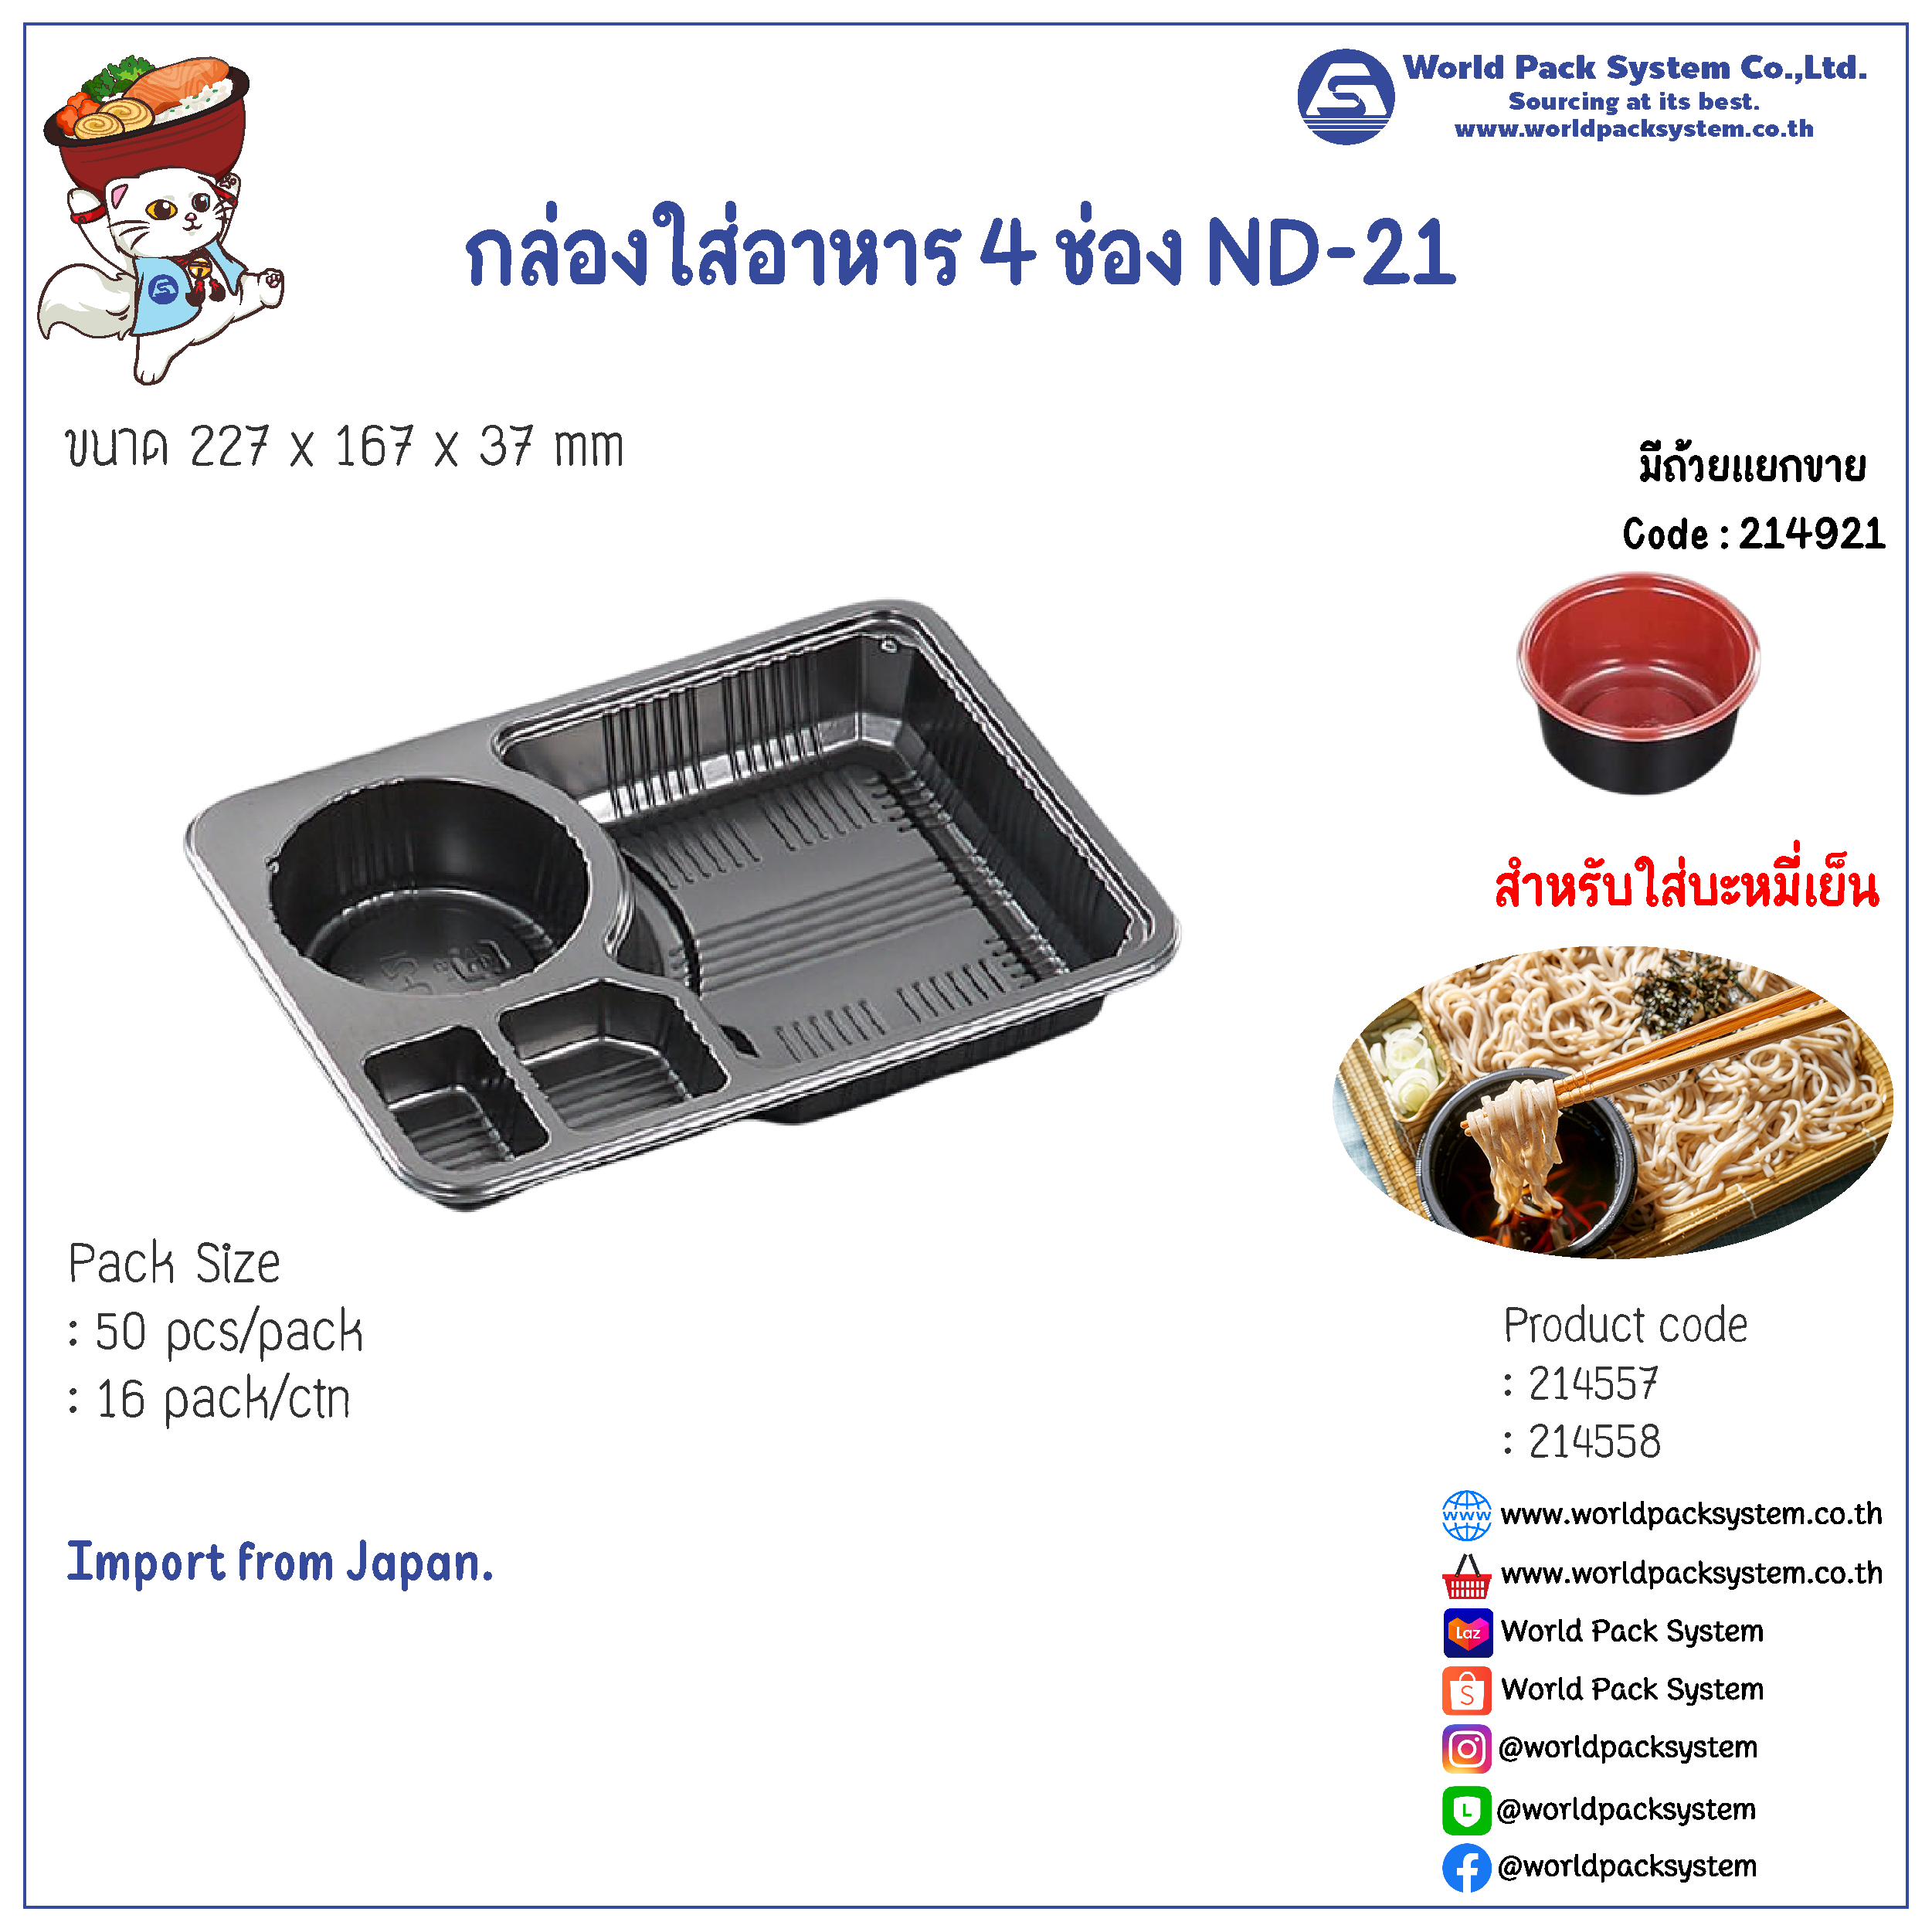 กล่องใส่อาหาร 4 ช่อง สำหรับซารุโซบะ (บะหมี่เย็น) ND-21 (50 ชุด)